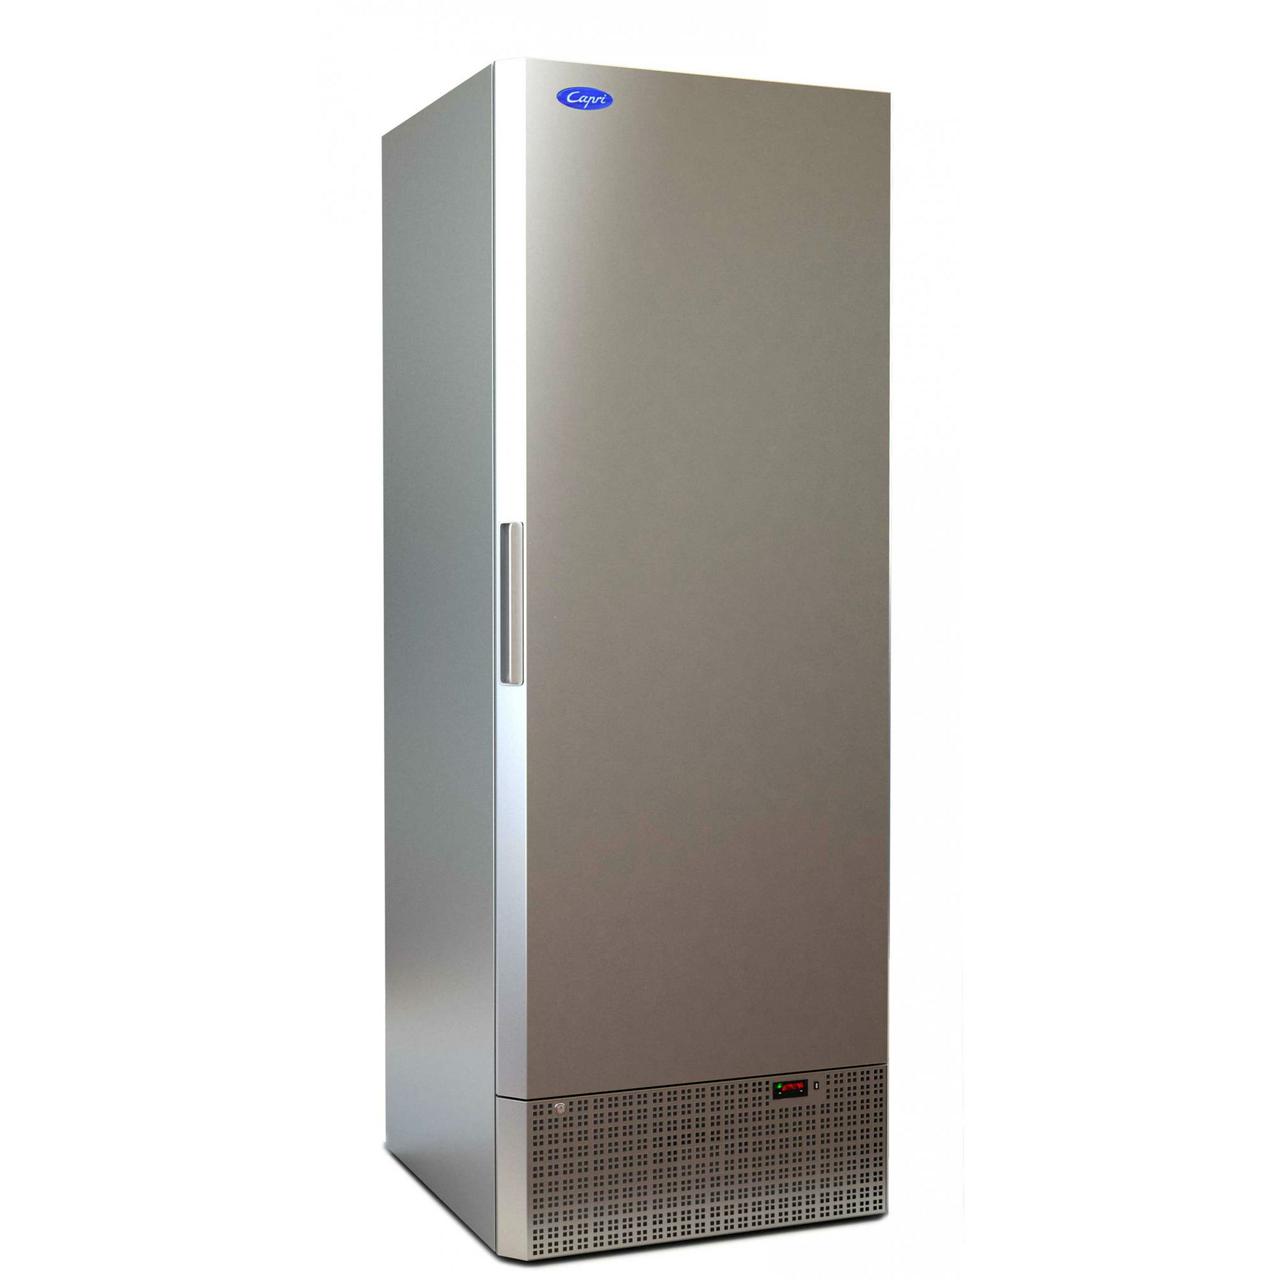 Холодильный шкаф МХМ Капри 0,7УМ (-6...+6) нержавейка